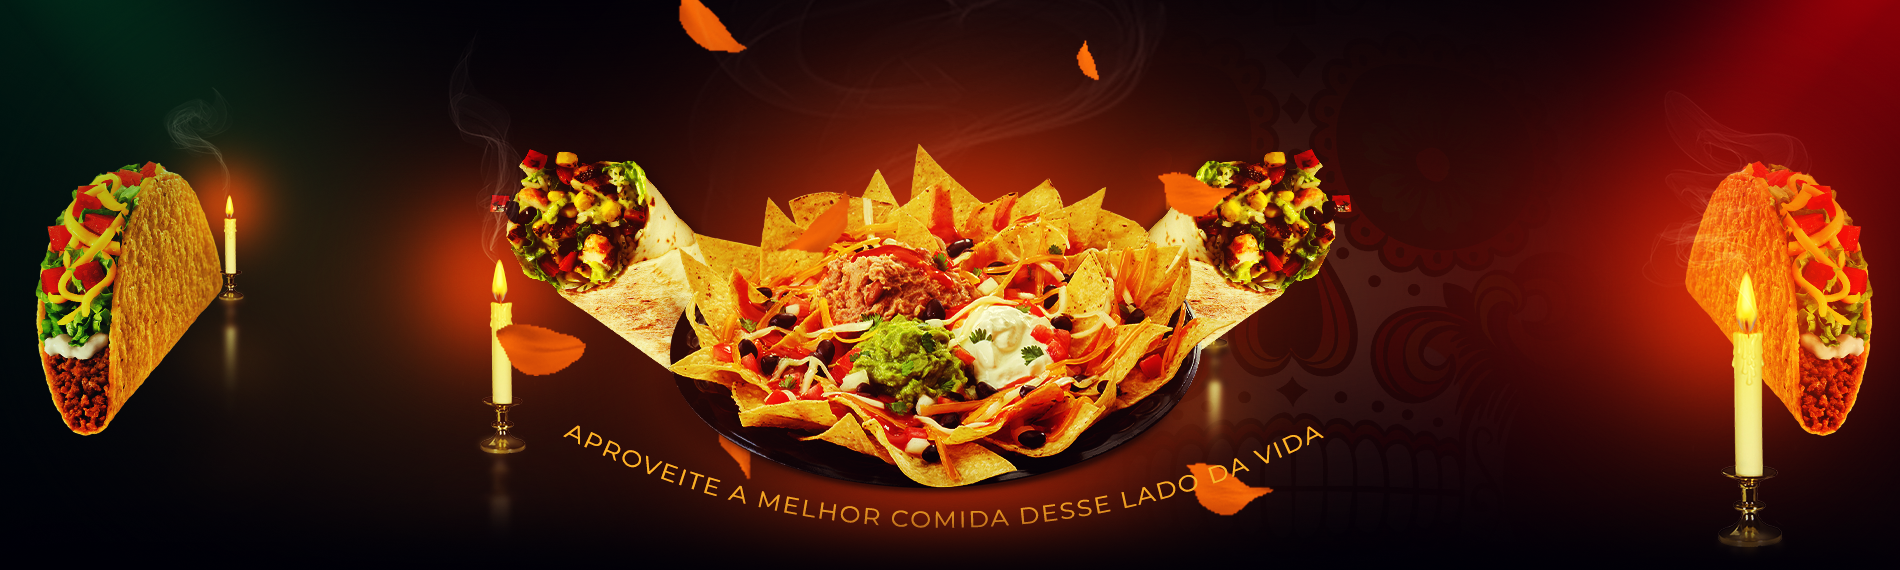 banner da empresa El Delirio Comida Mexicana